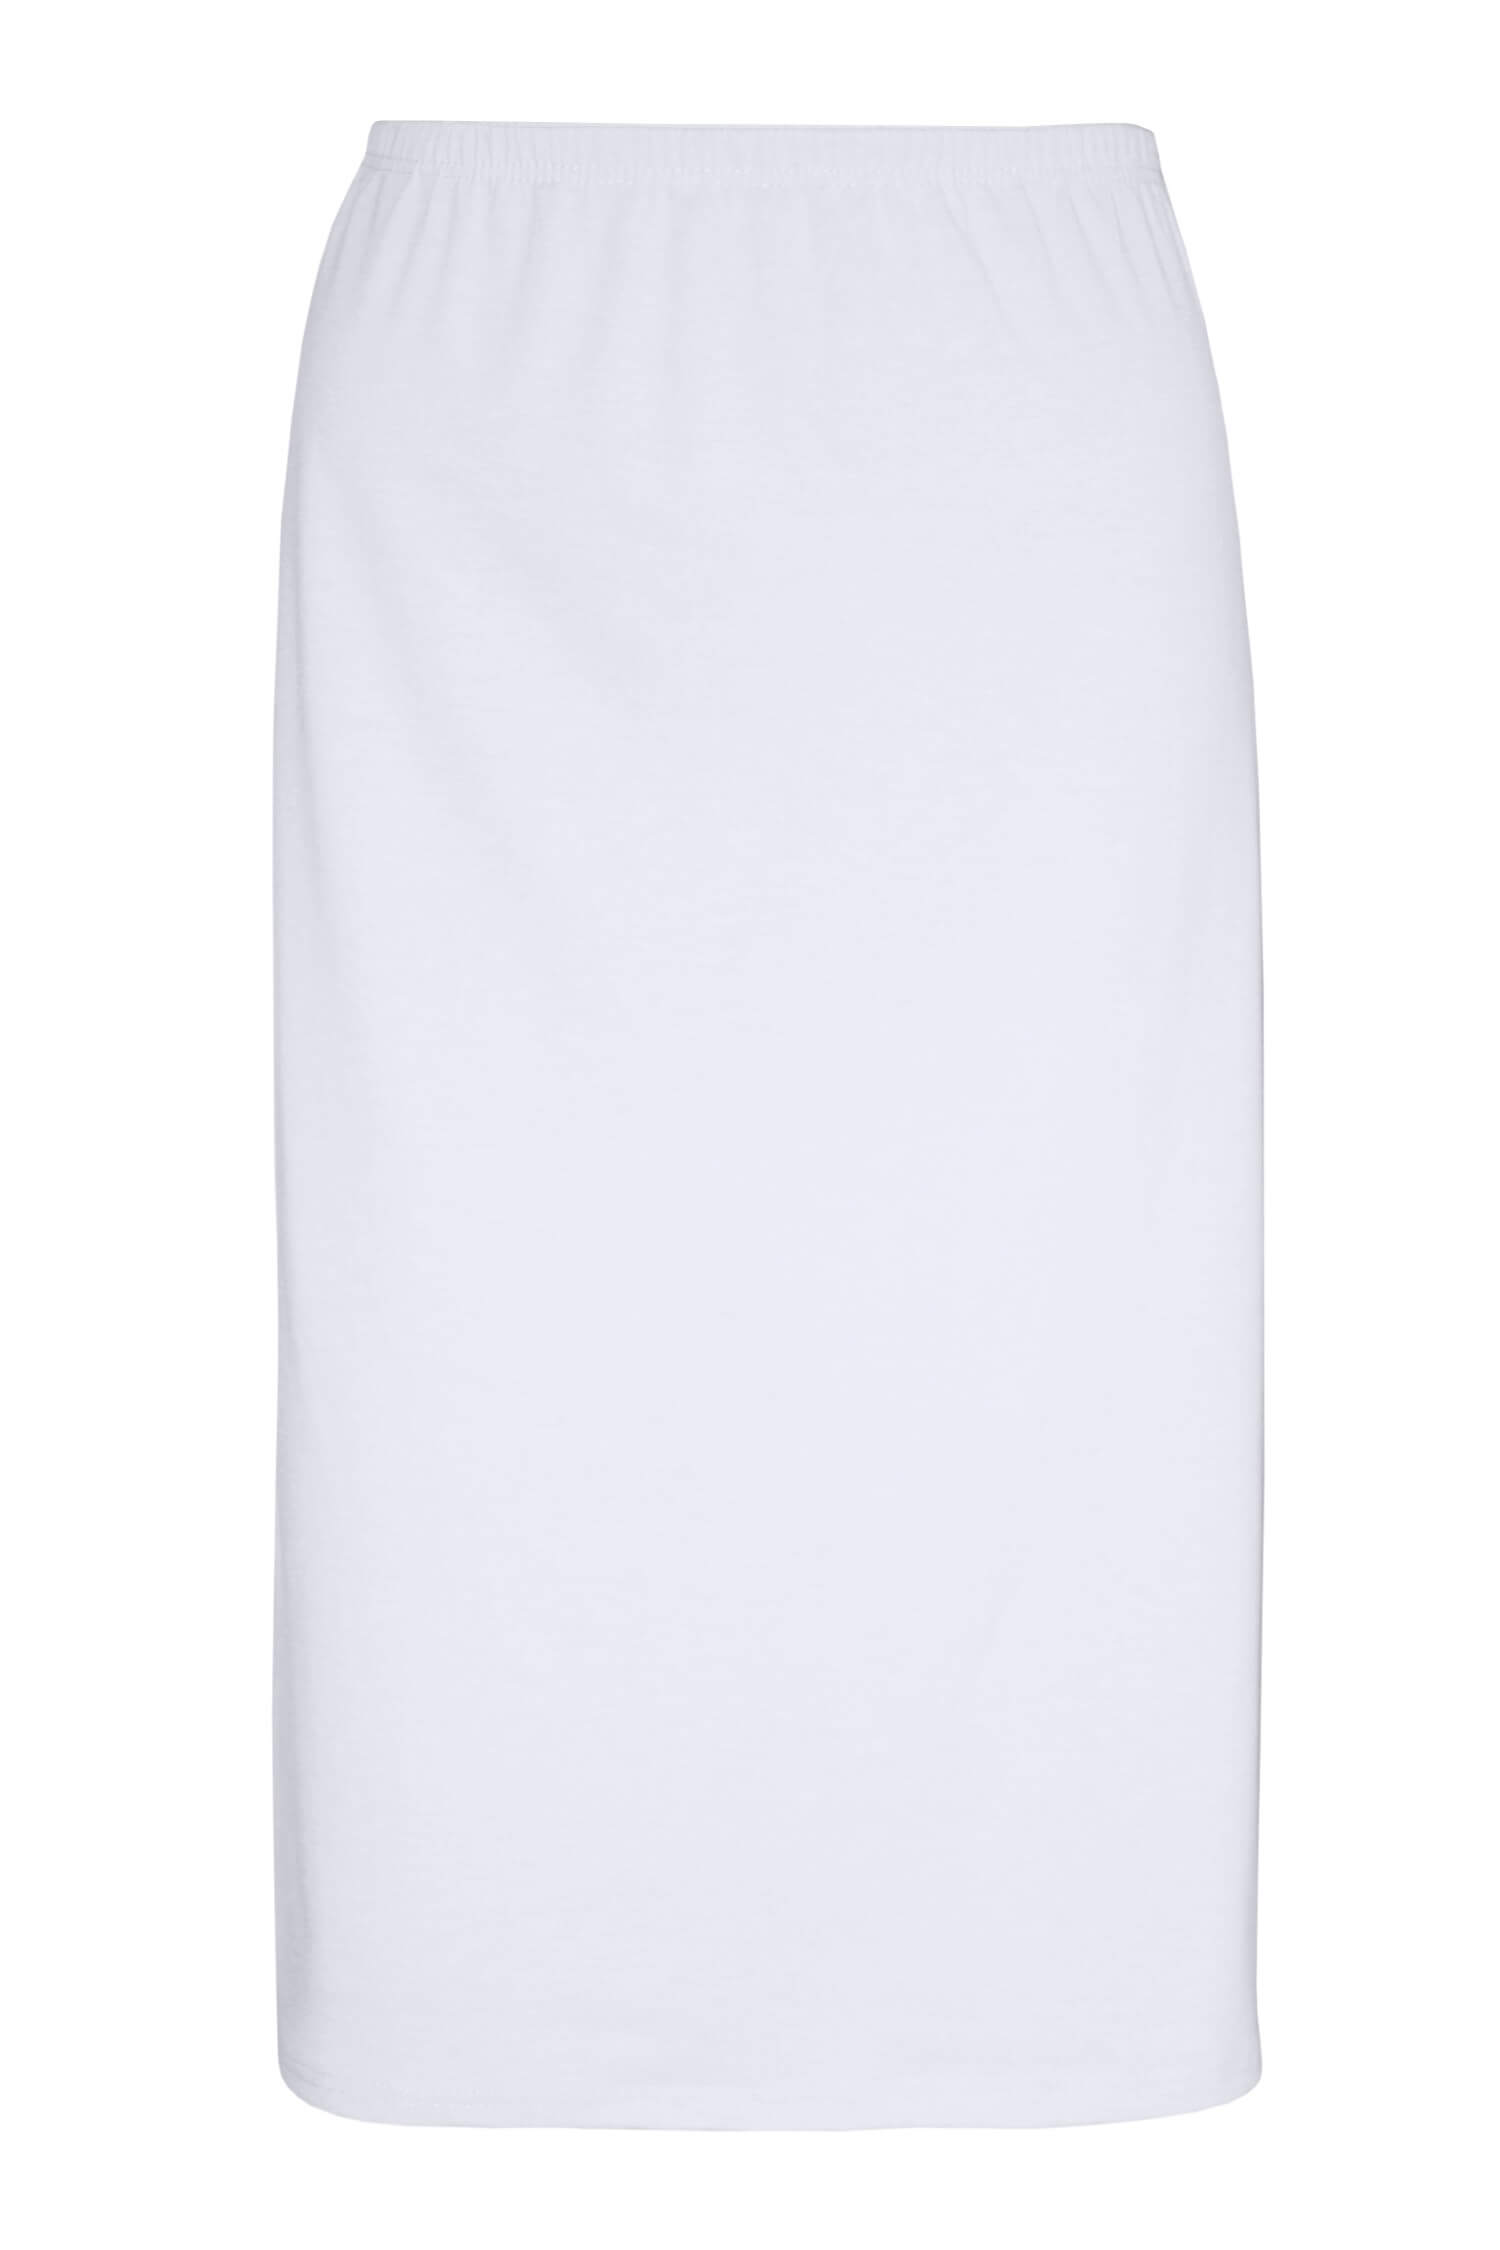 Arnoštka bavlněná spodnička - sukně 716 L bílá